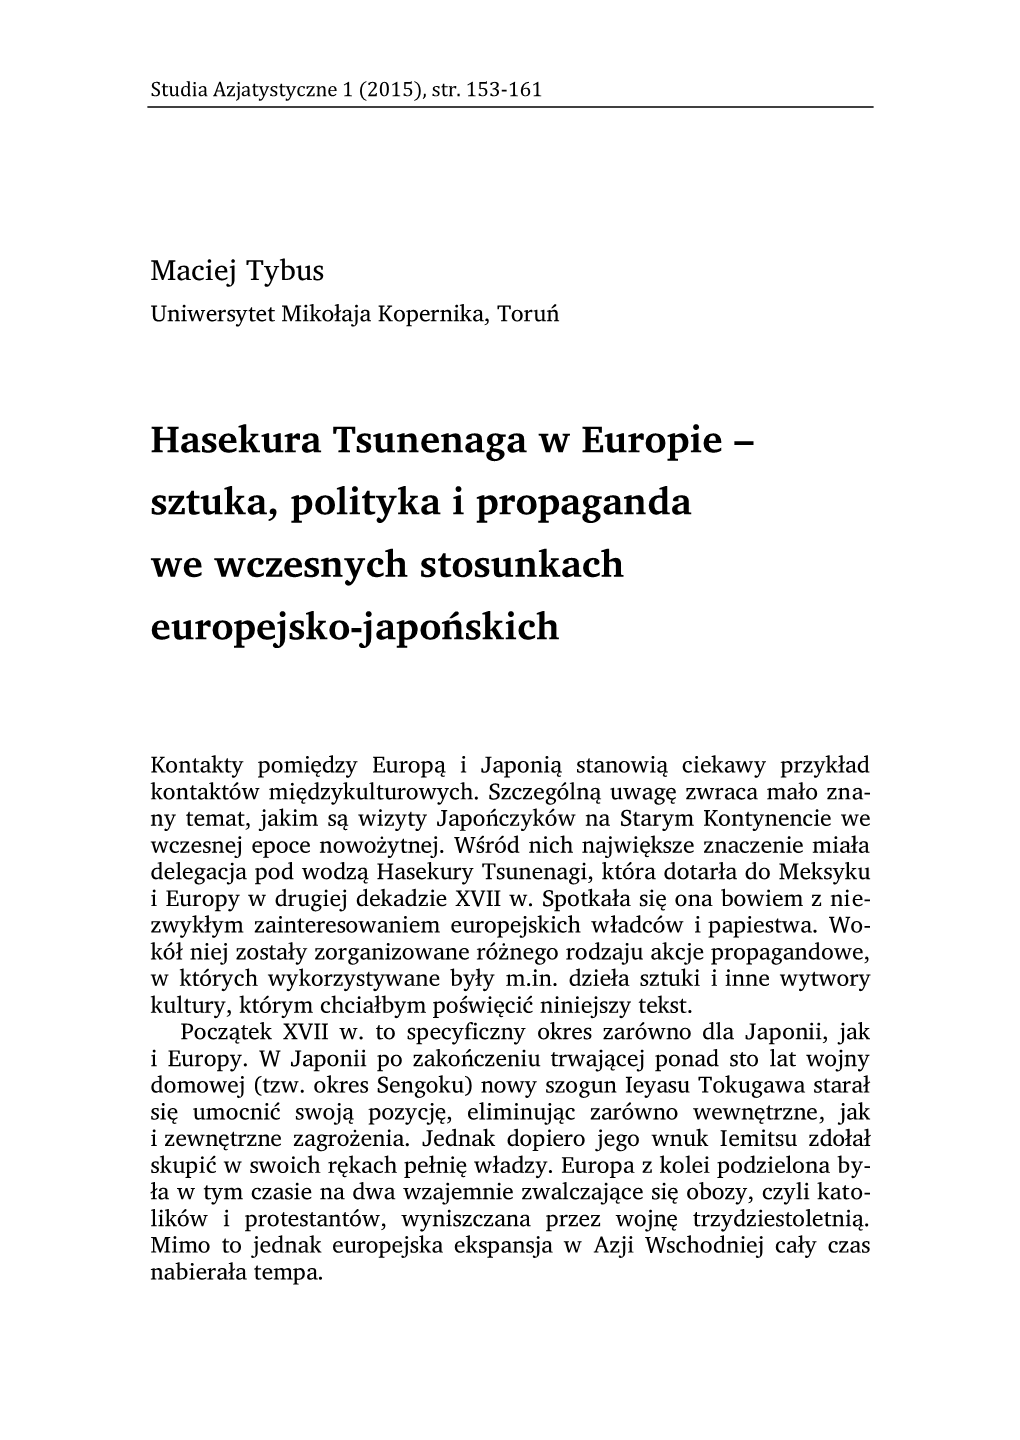 Hasekura Tsunenaga W Europie – Sztuka, Polityka I Propaganda We Wczesnych Stosunkach Europejsko-Japońskich